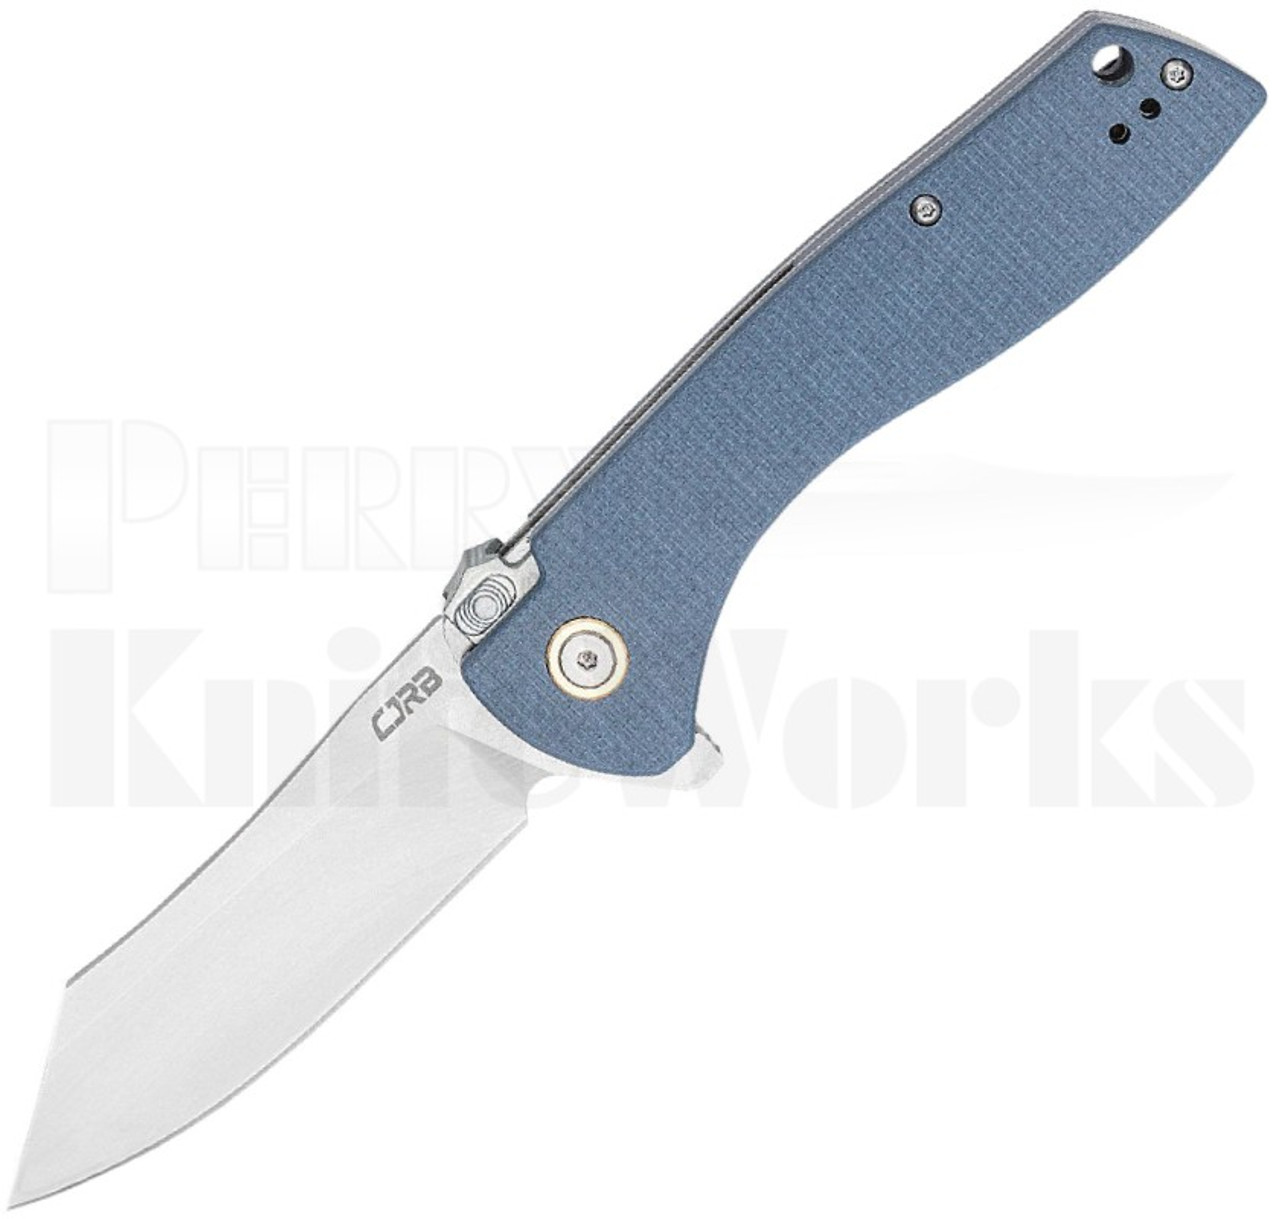 CJRB Kicker Recoil-Lock Knife Blue G-10 J1915-BU l For Sale